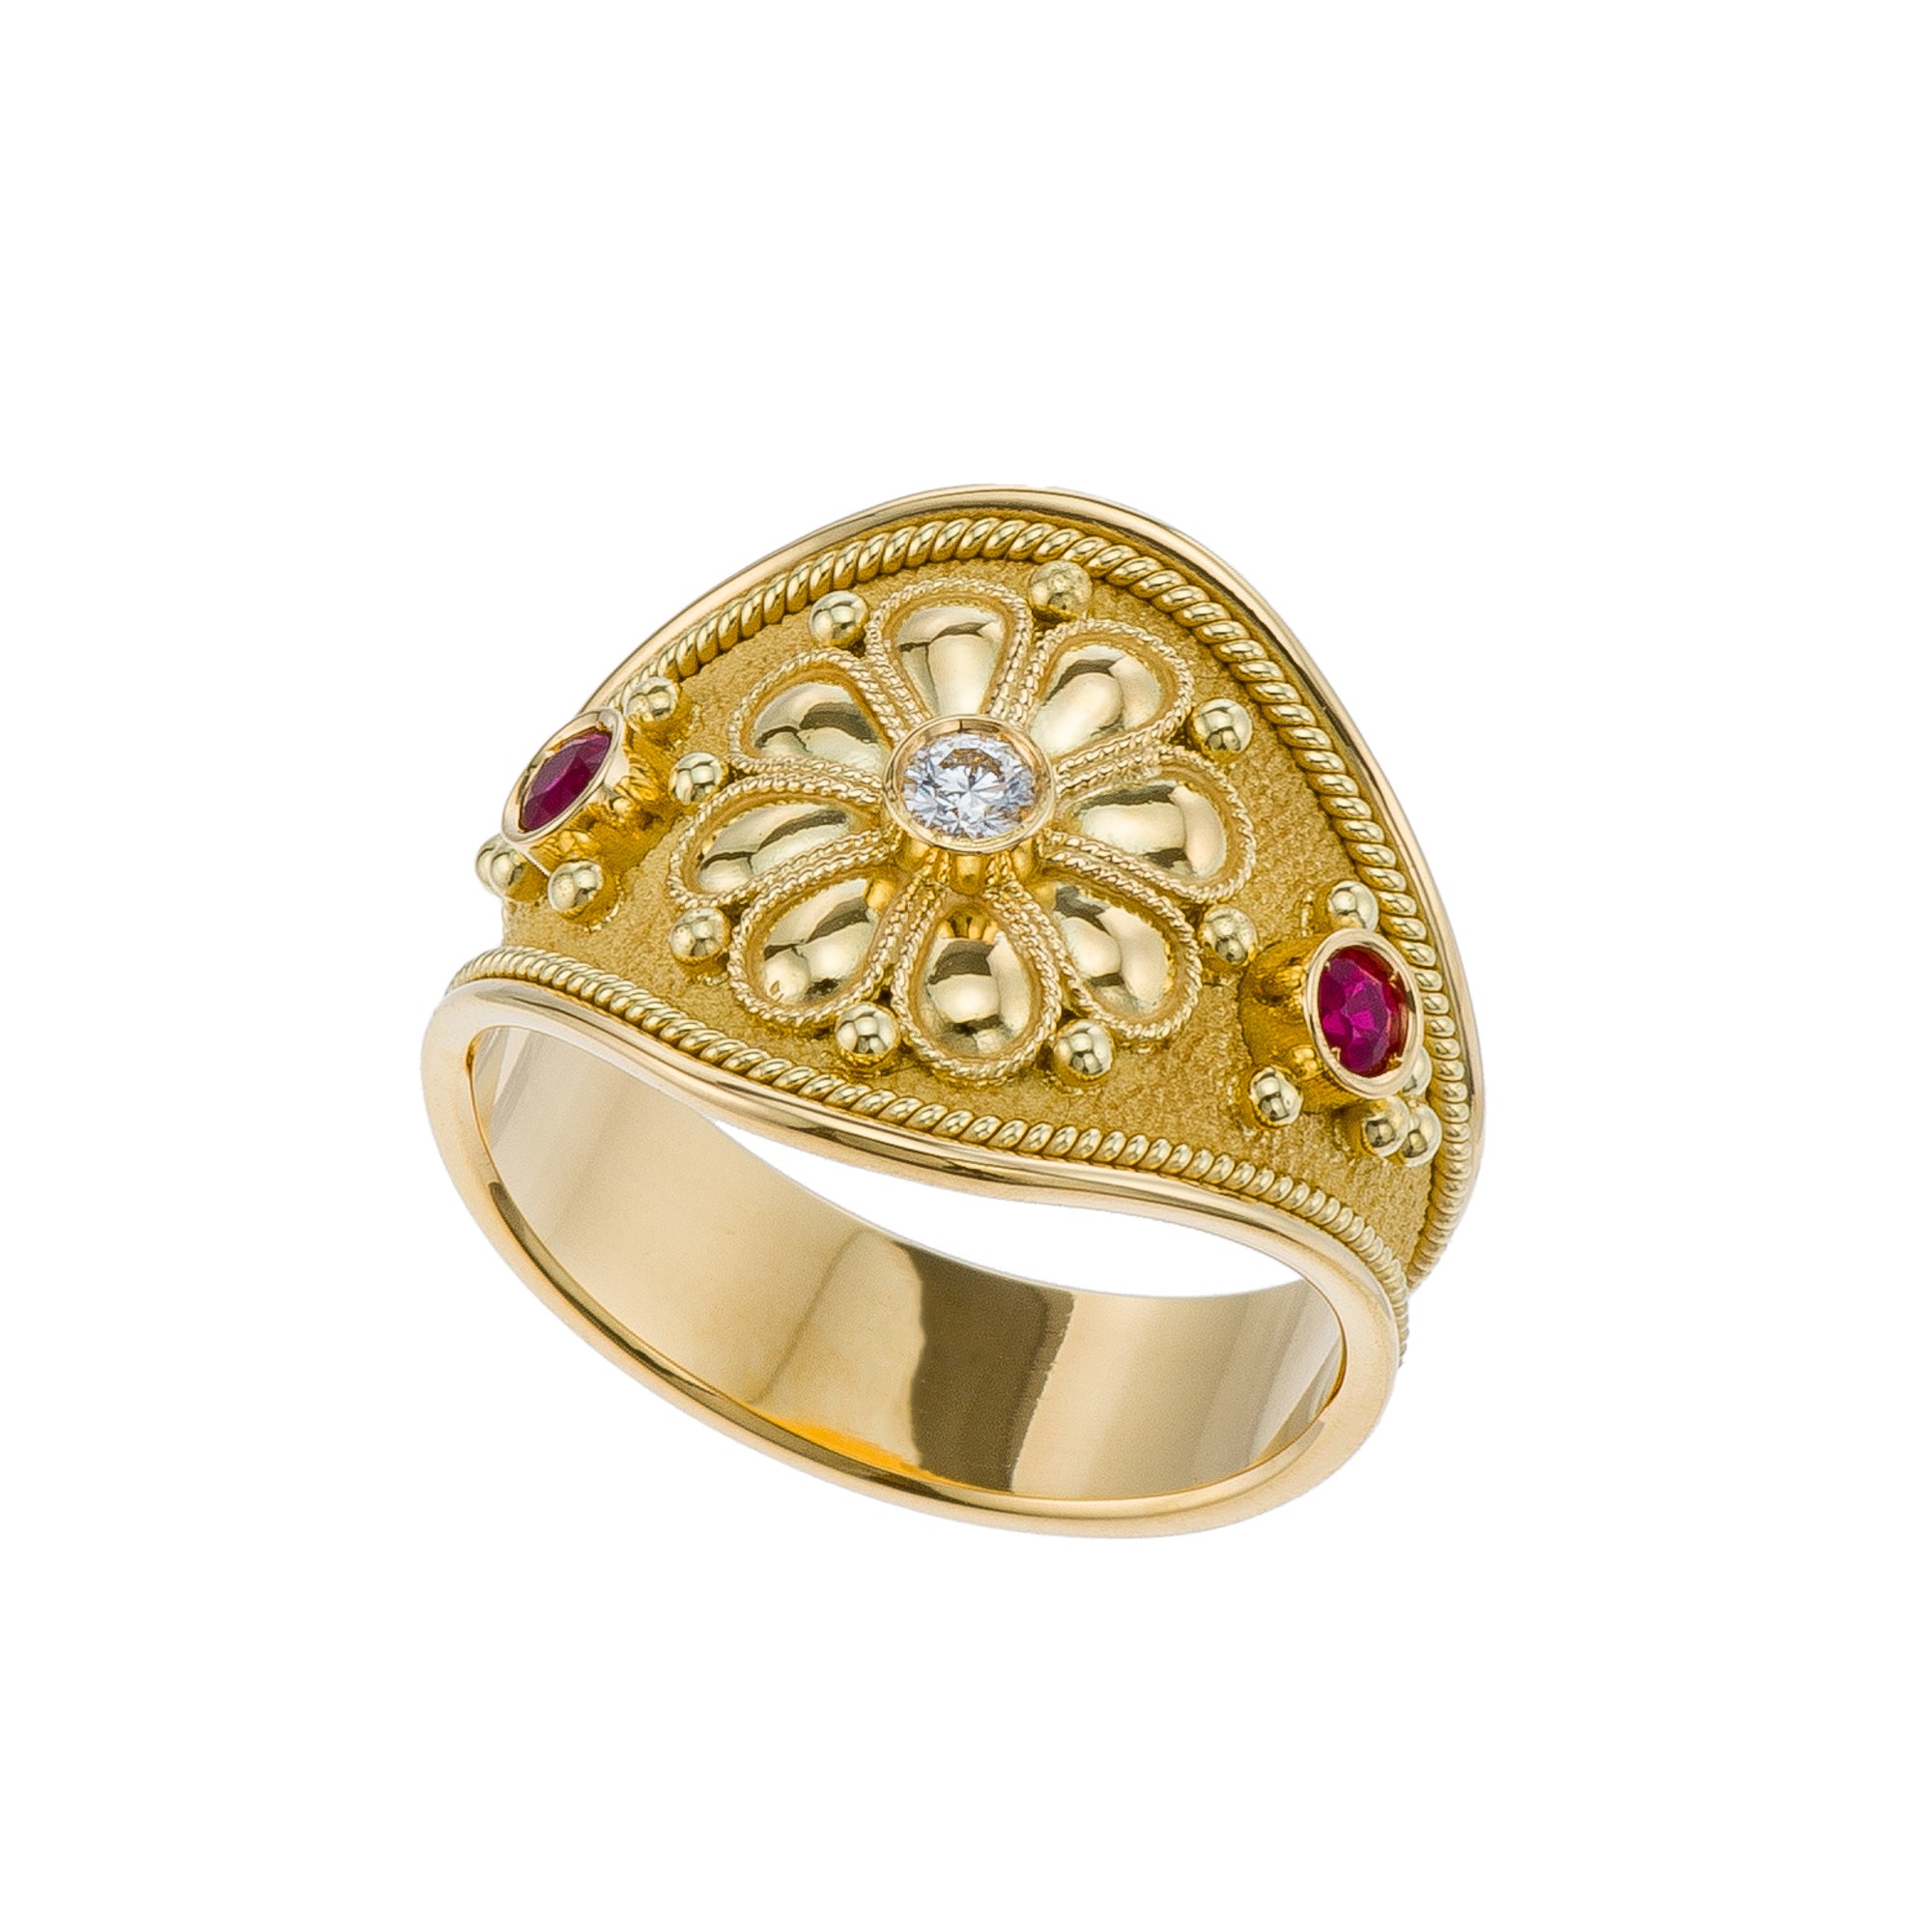 Gold Diamond Byzantine Daisy Ring with Rubies Odysseus Jewelry